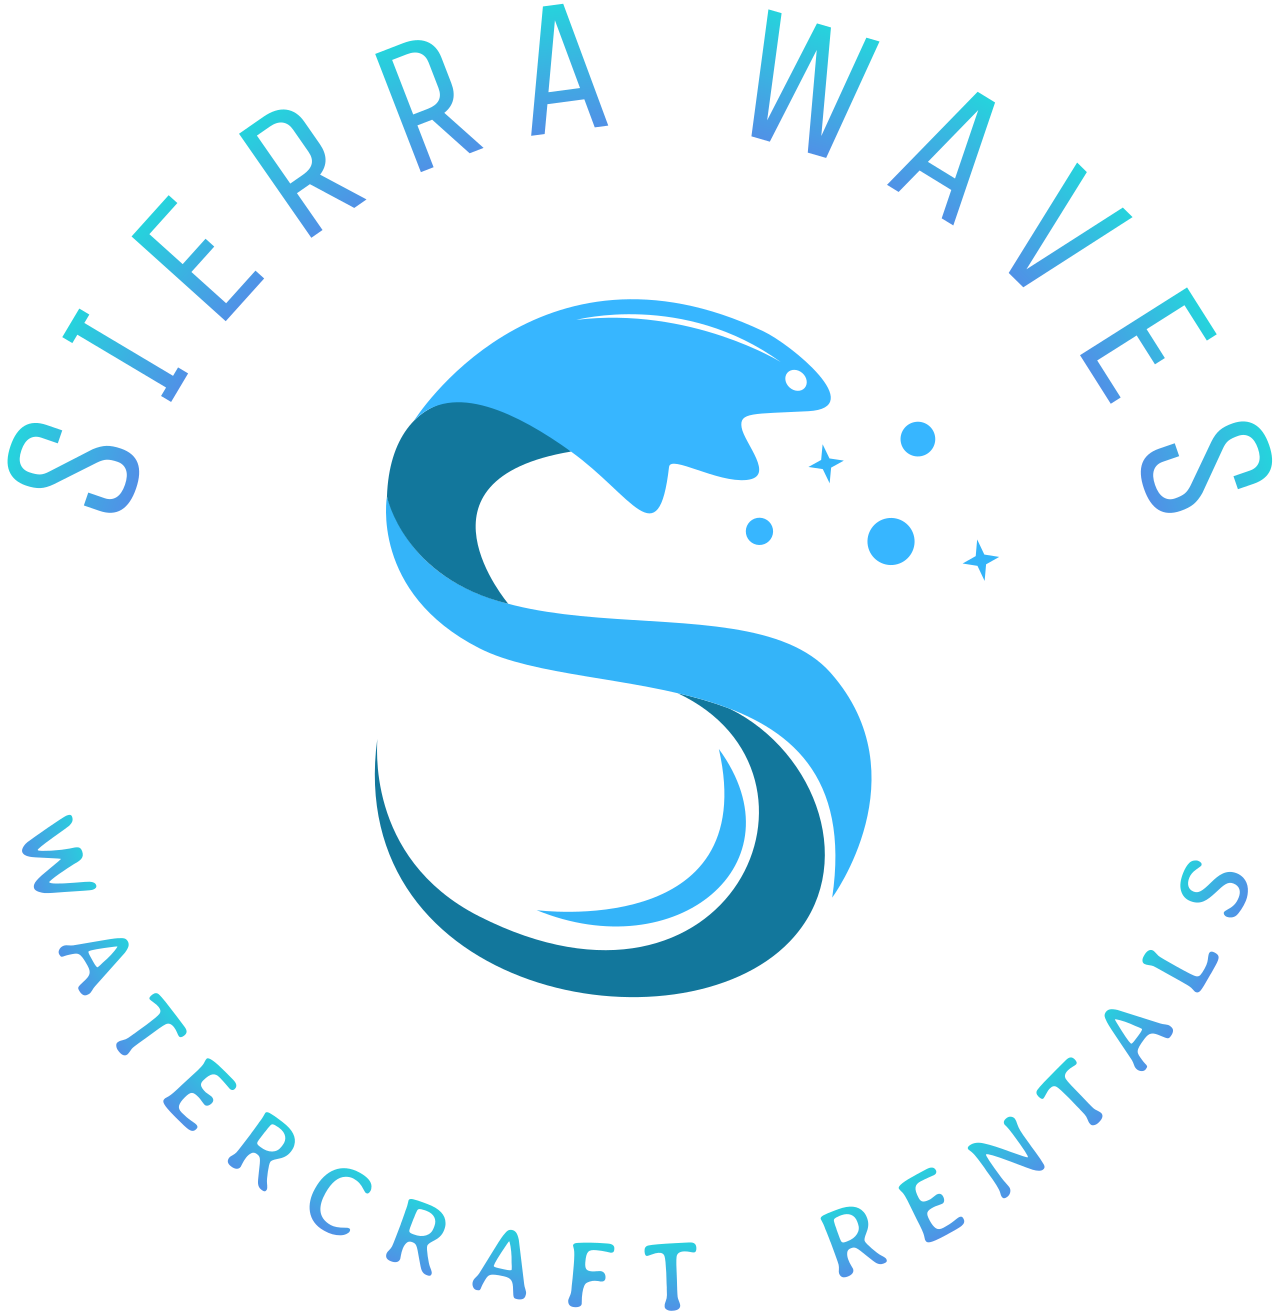 SIERRA WAVES's logo